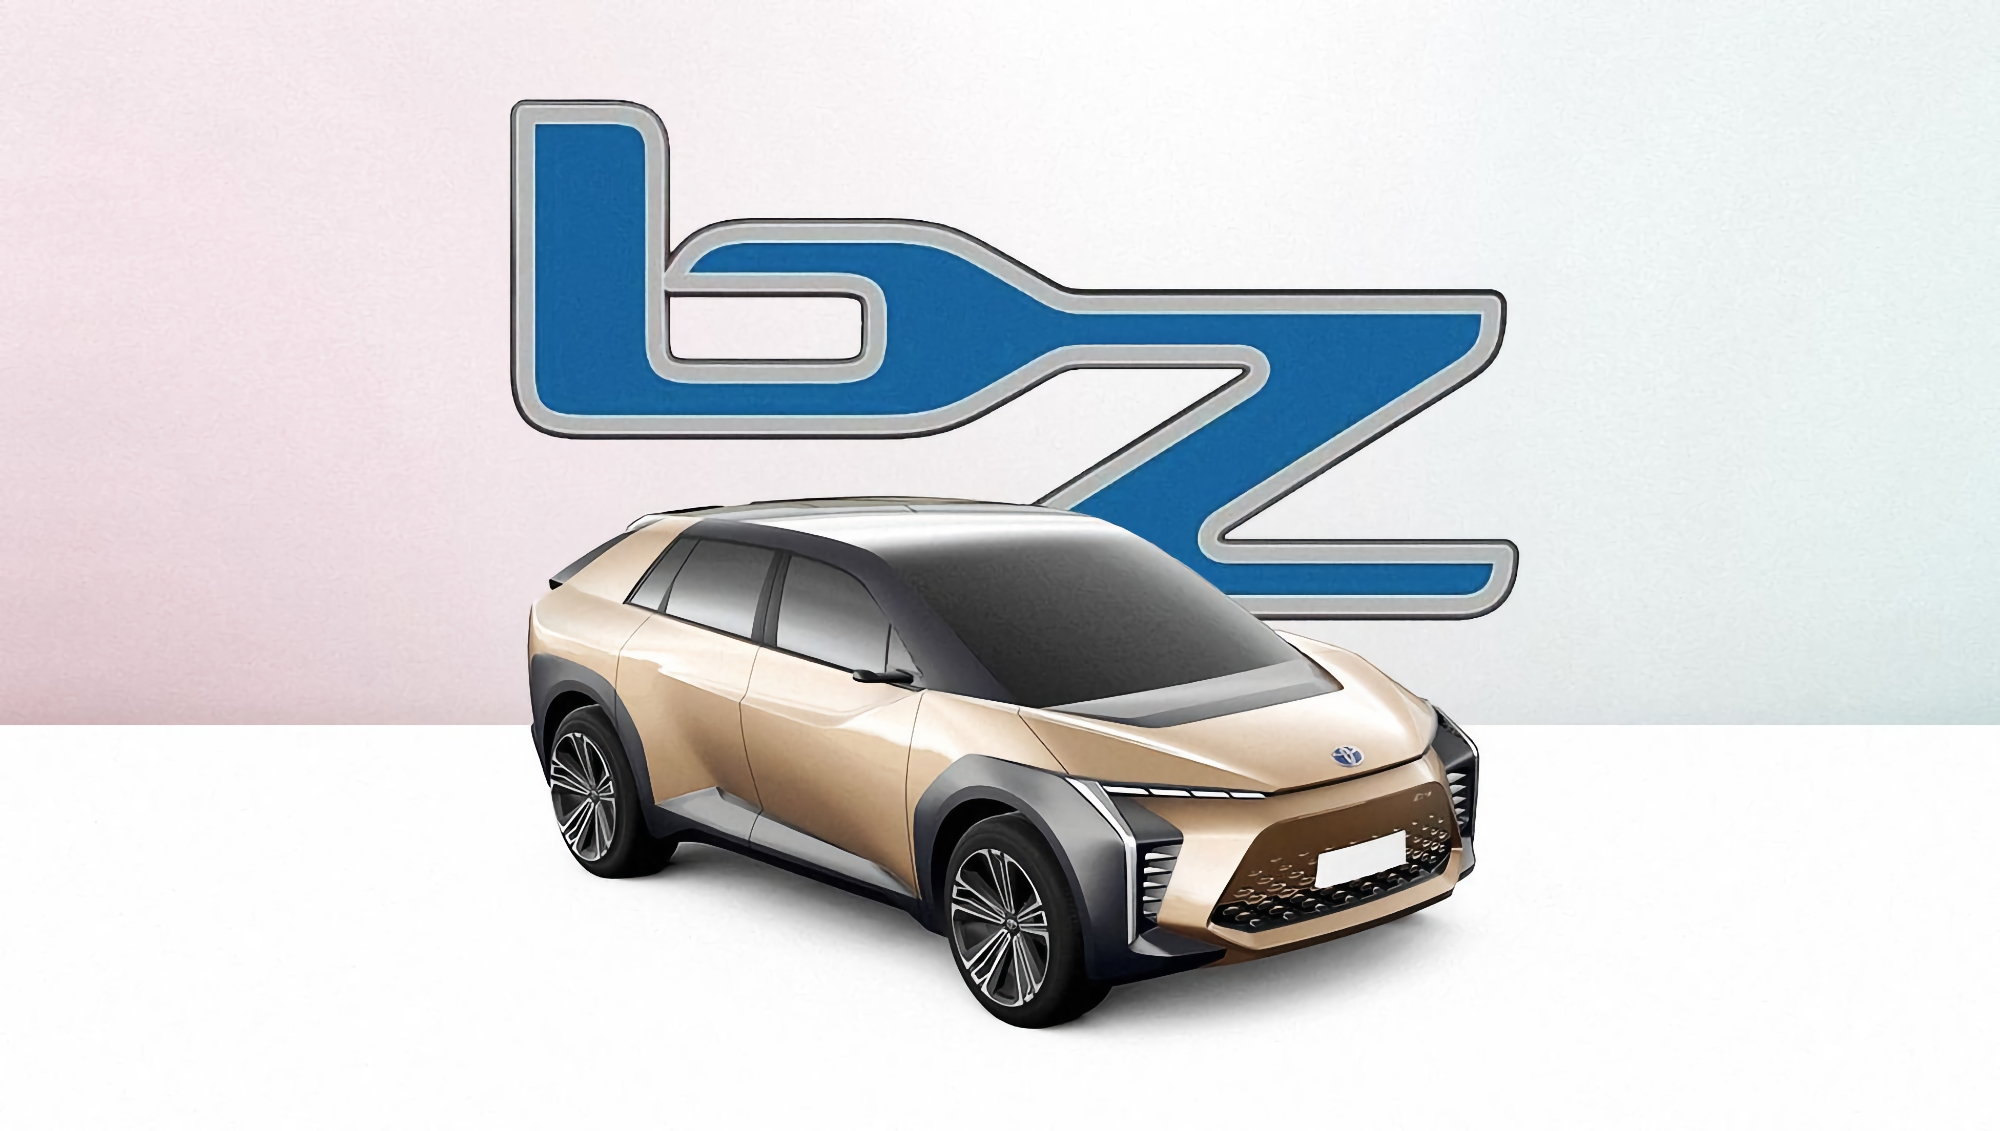 Gerücht: Toyota zeigt auf der Shanghai Auto Show das erste Elektroauto Beyond Zero, das in 10 Minuten auf 100% aufgeladen wird